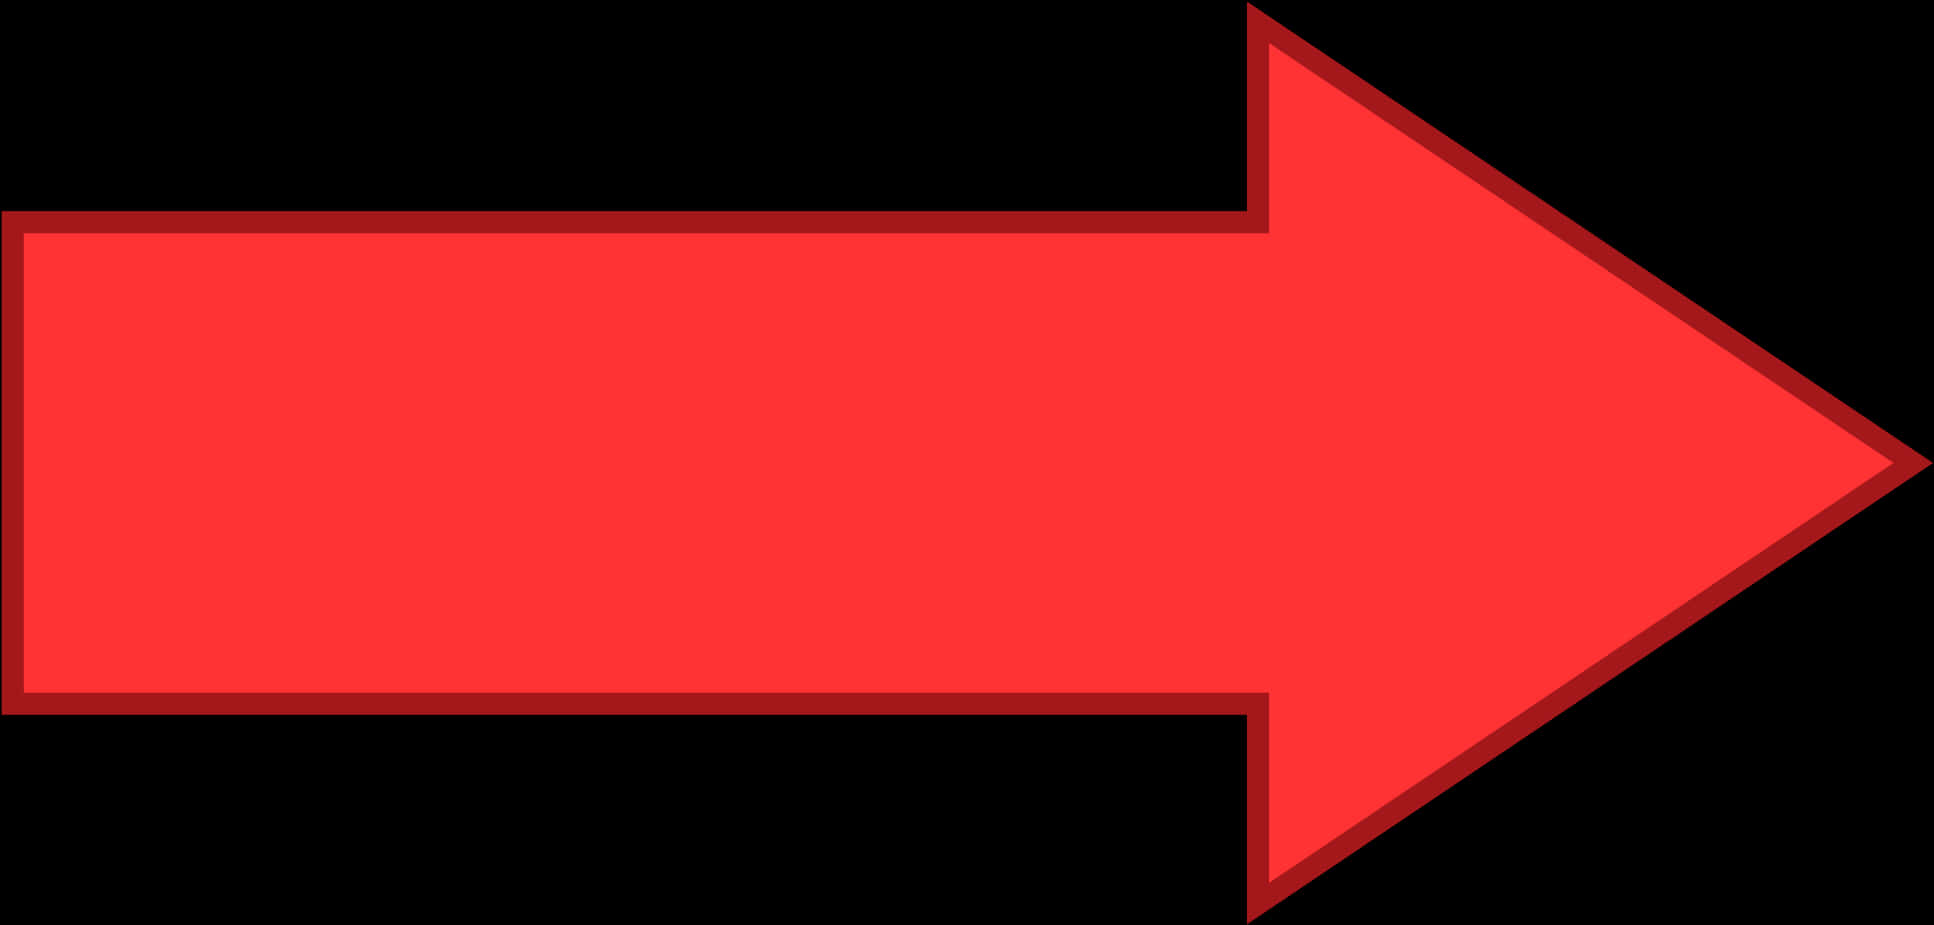 Simple Border Red Arrows